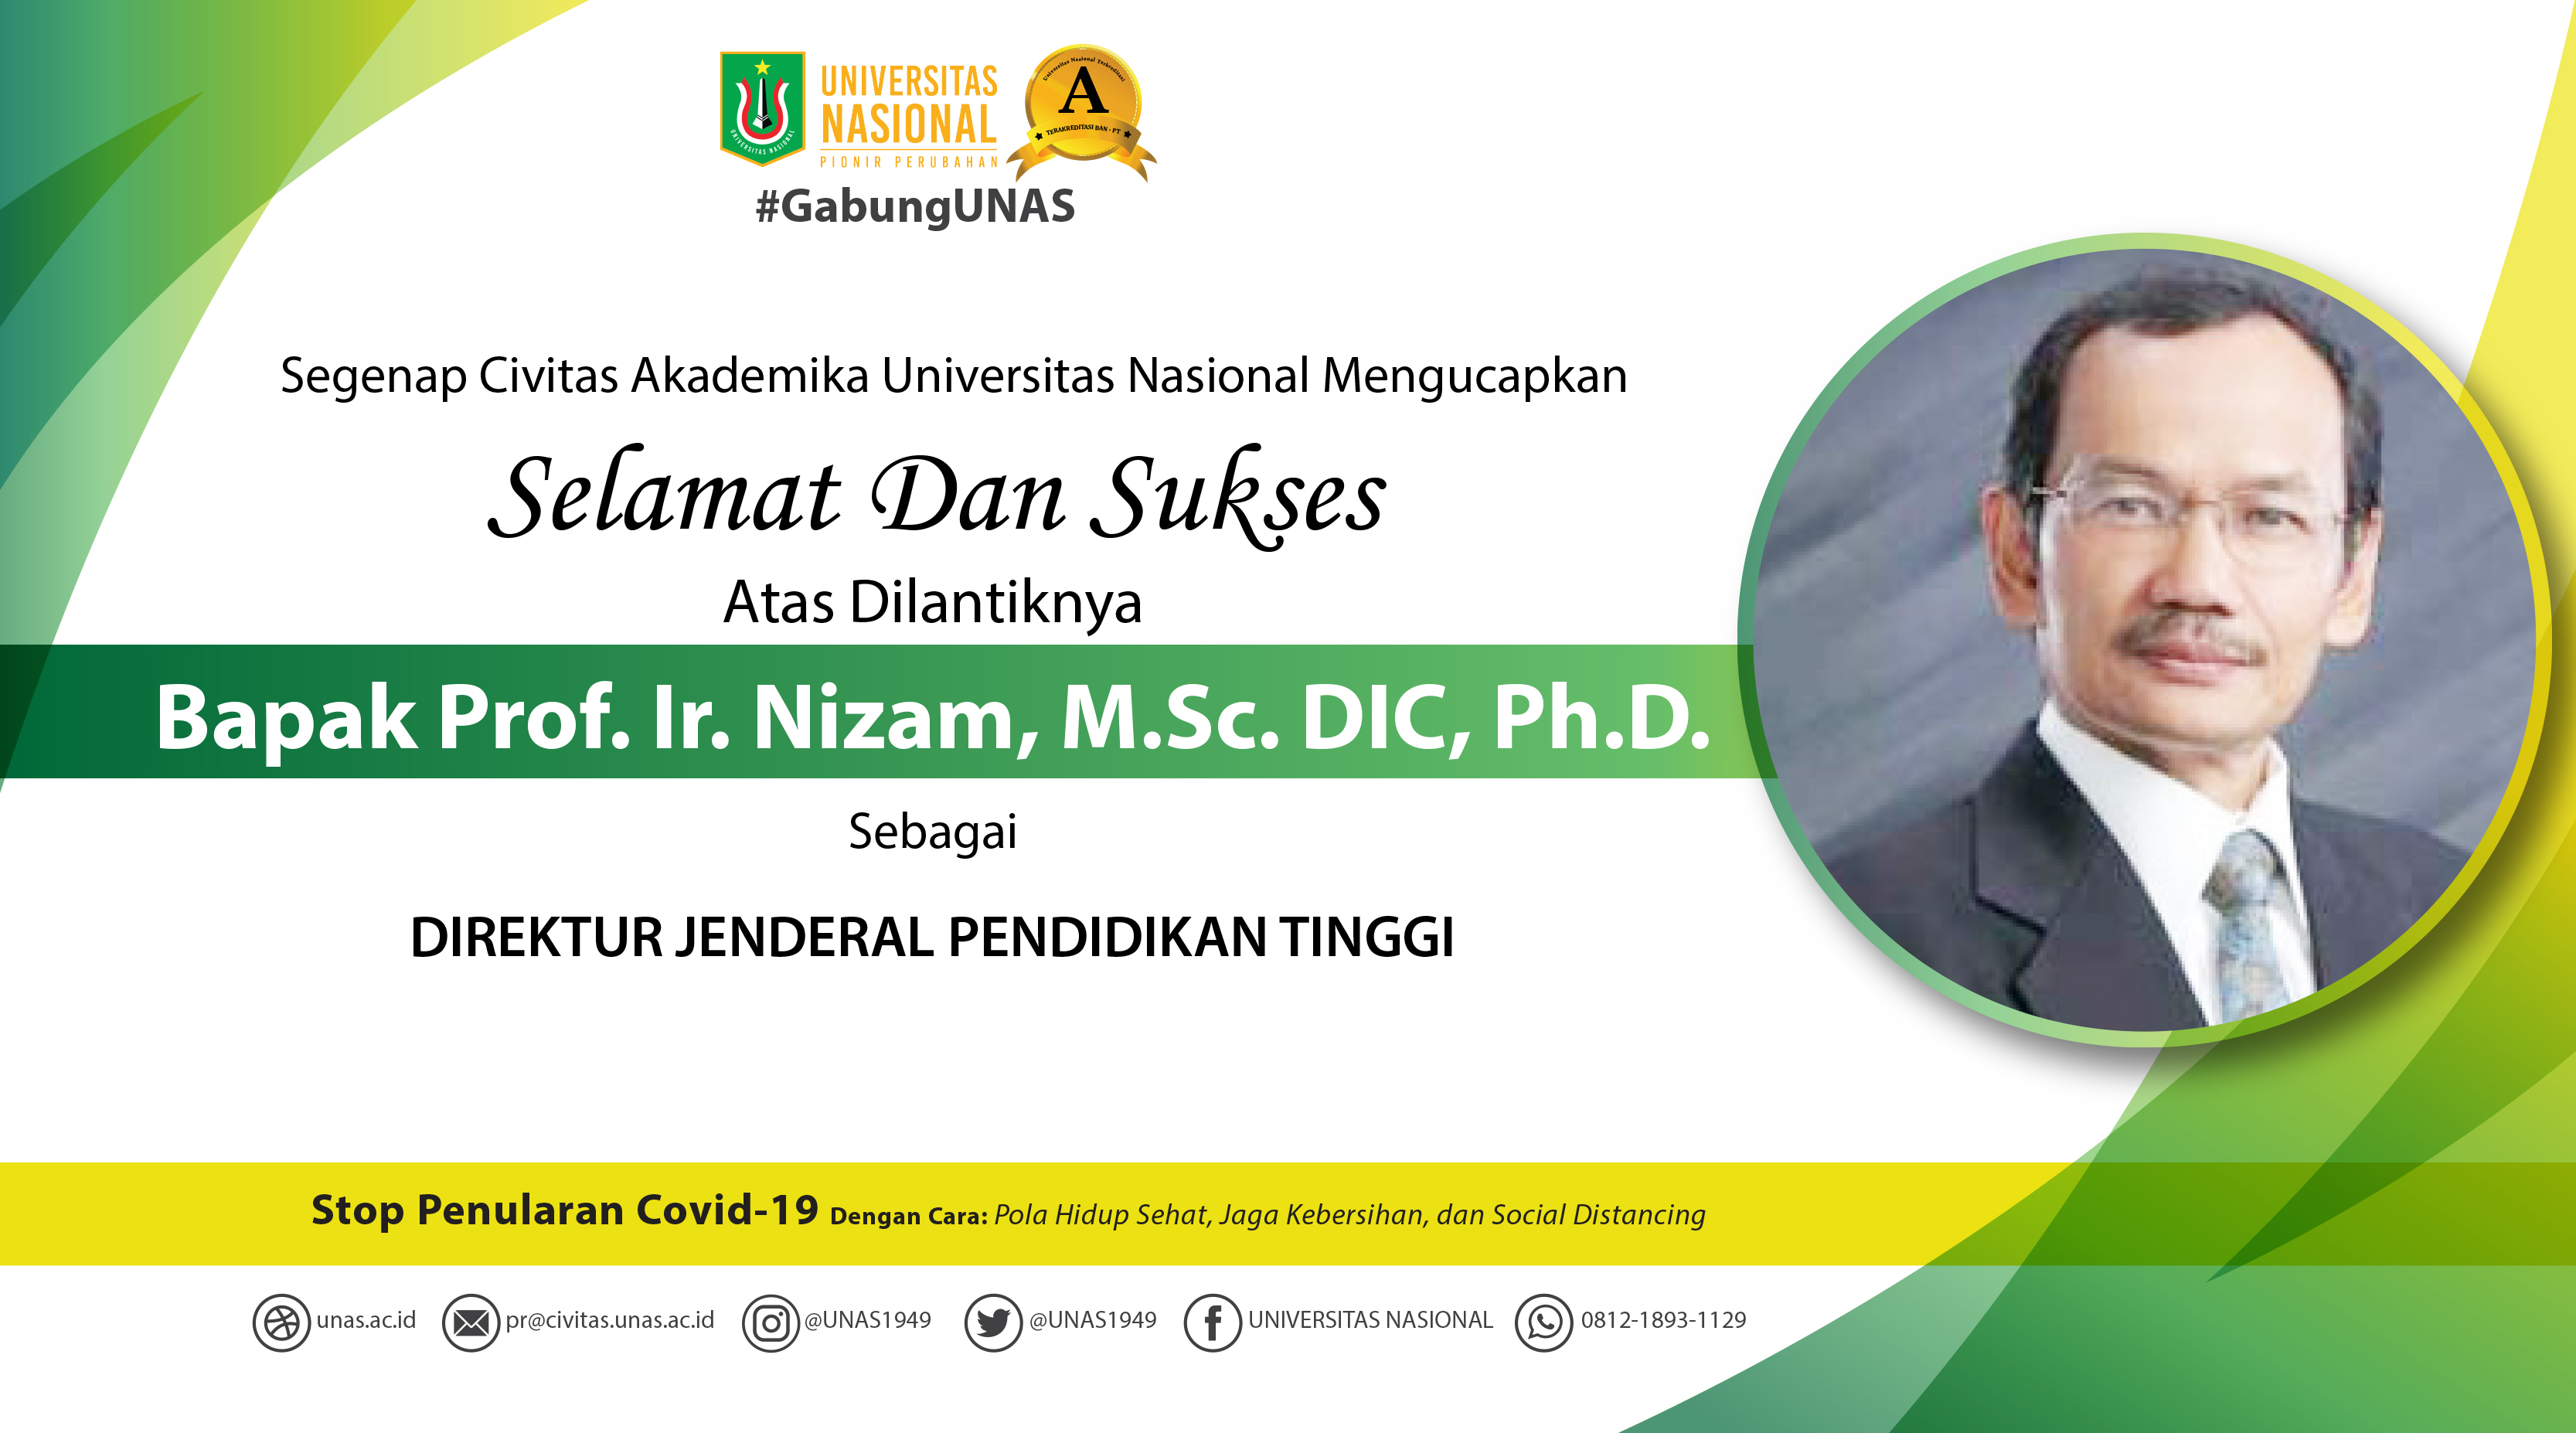 Selamat dan Sukses atas dilantiknya Bapak Prof. Ir. Nizam, M.Sc. DIC, Ph.D. Sebagai Direktur Jenderal Pendidikan Tinggi